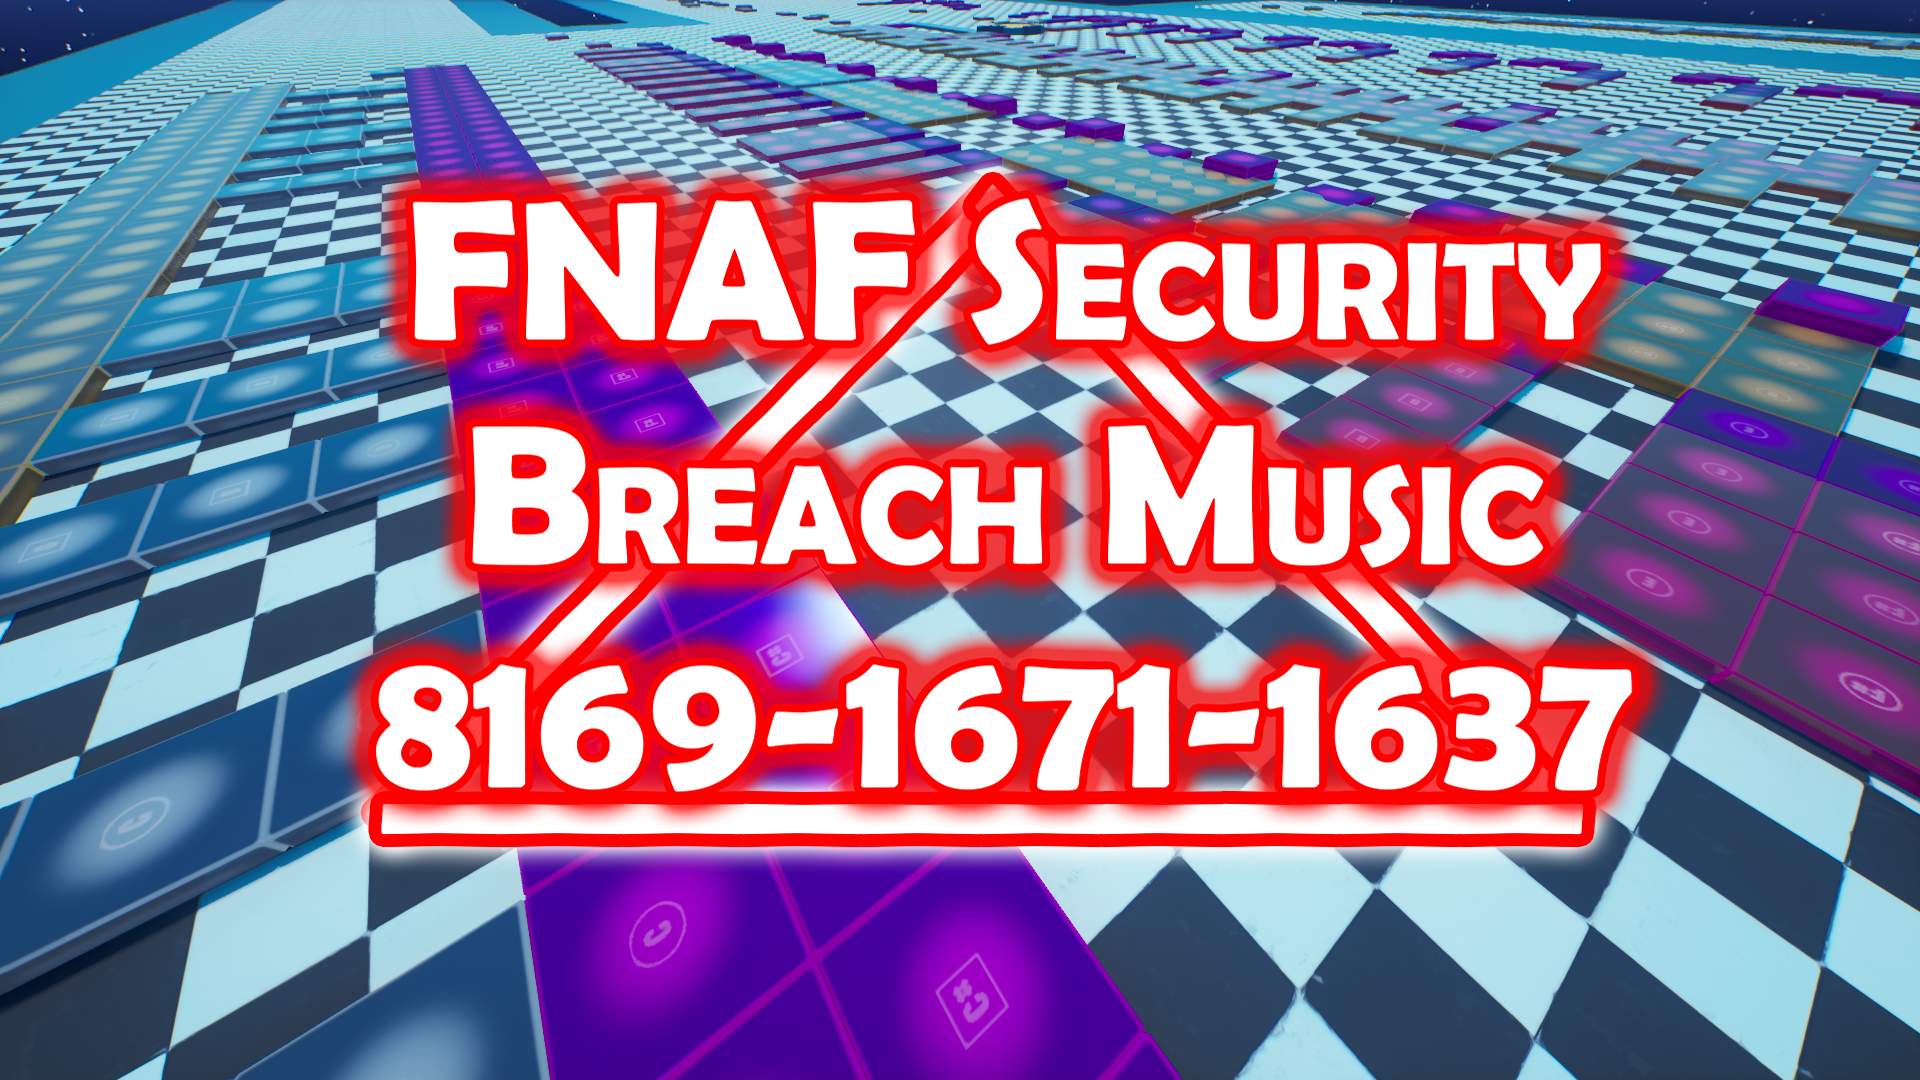 FNAF SECURITY BREACH MUSIC 8169-1671-1637